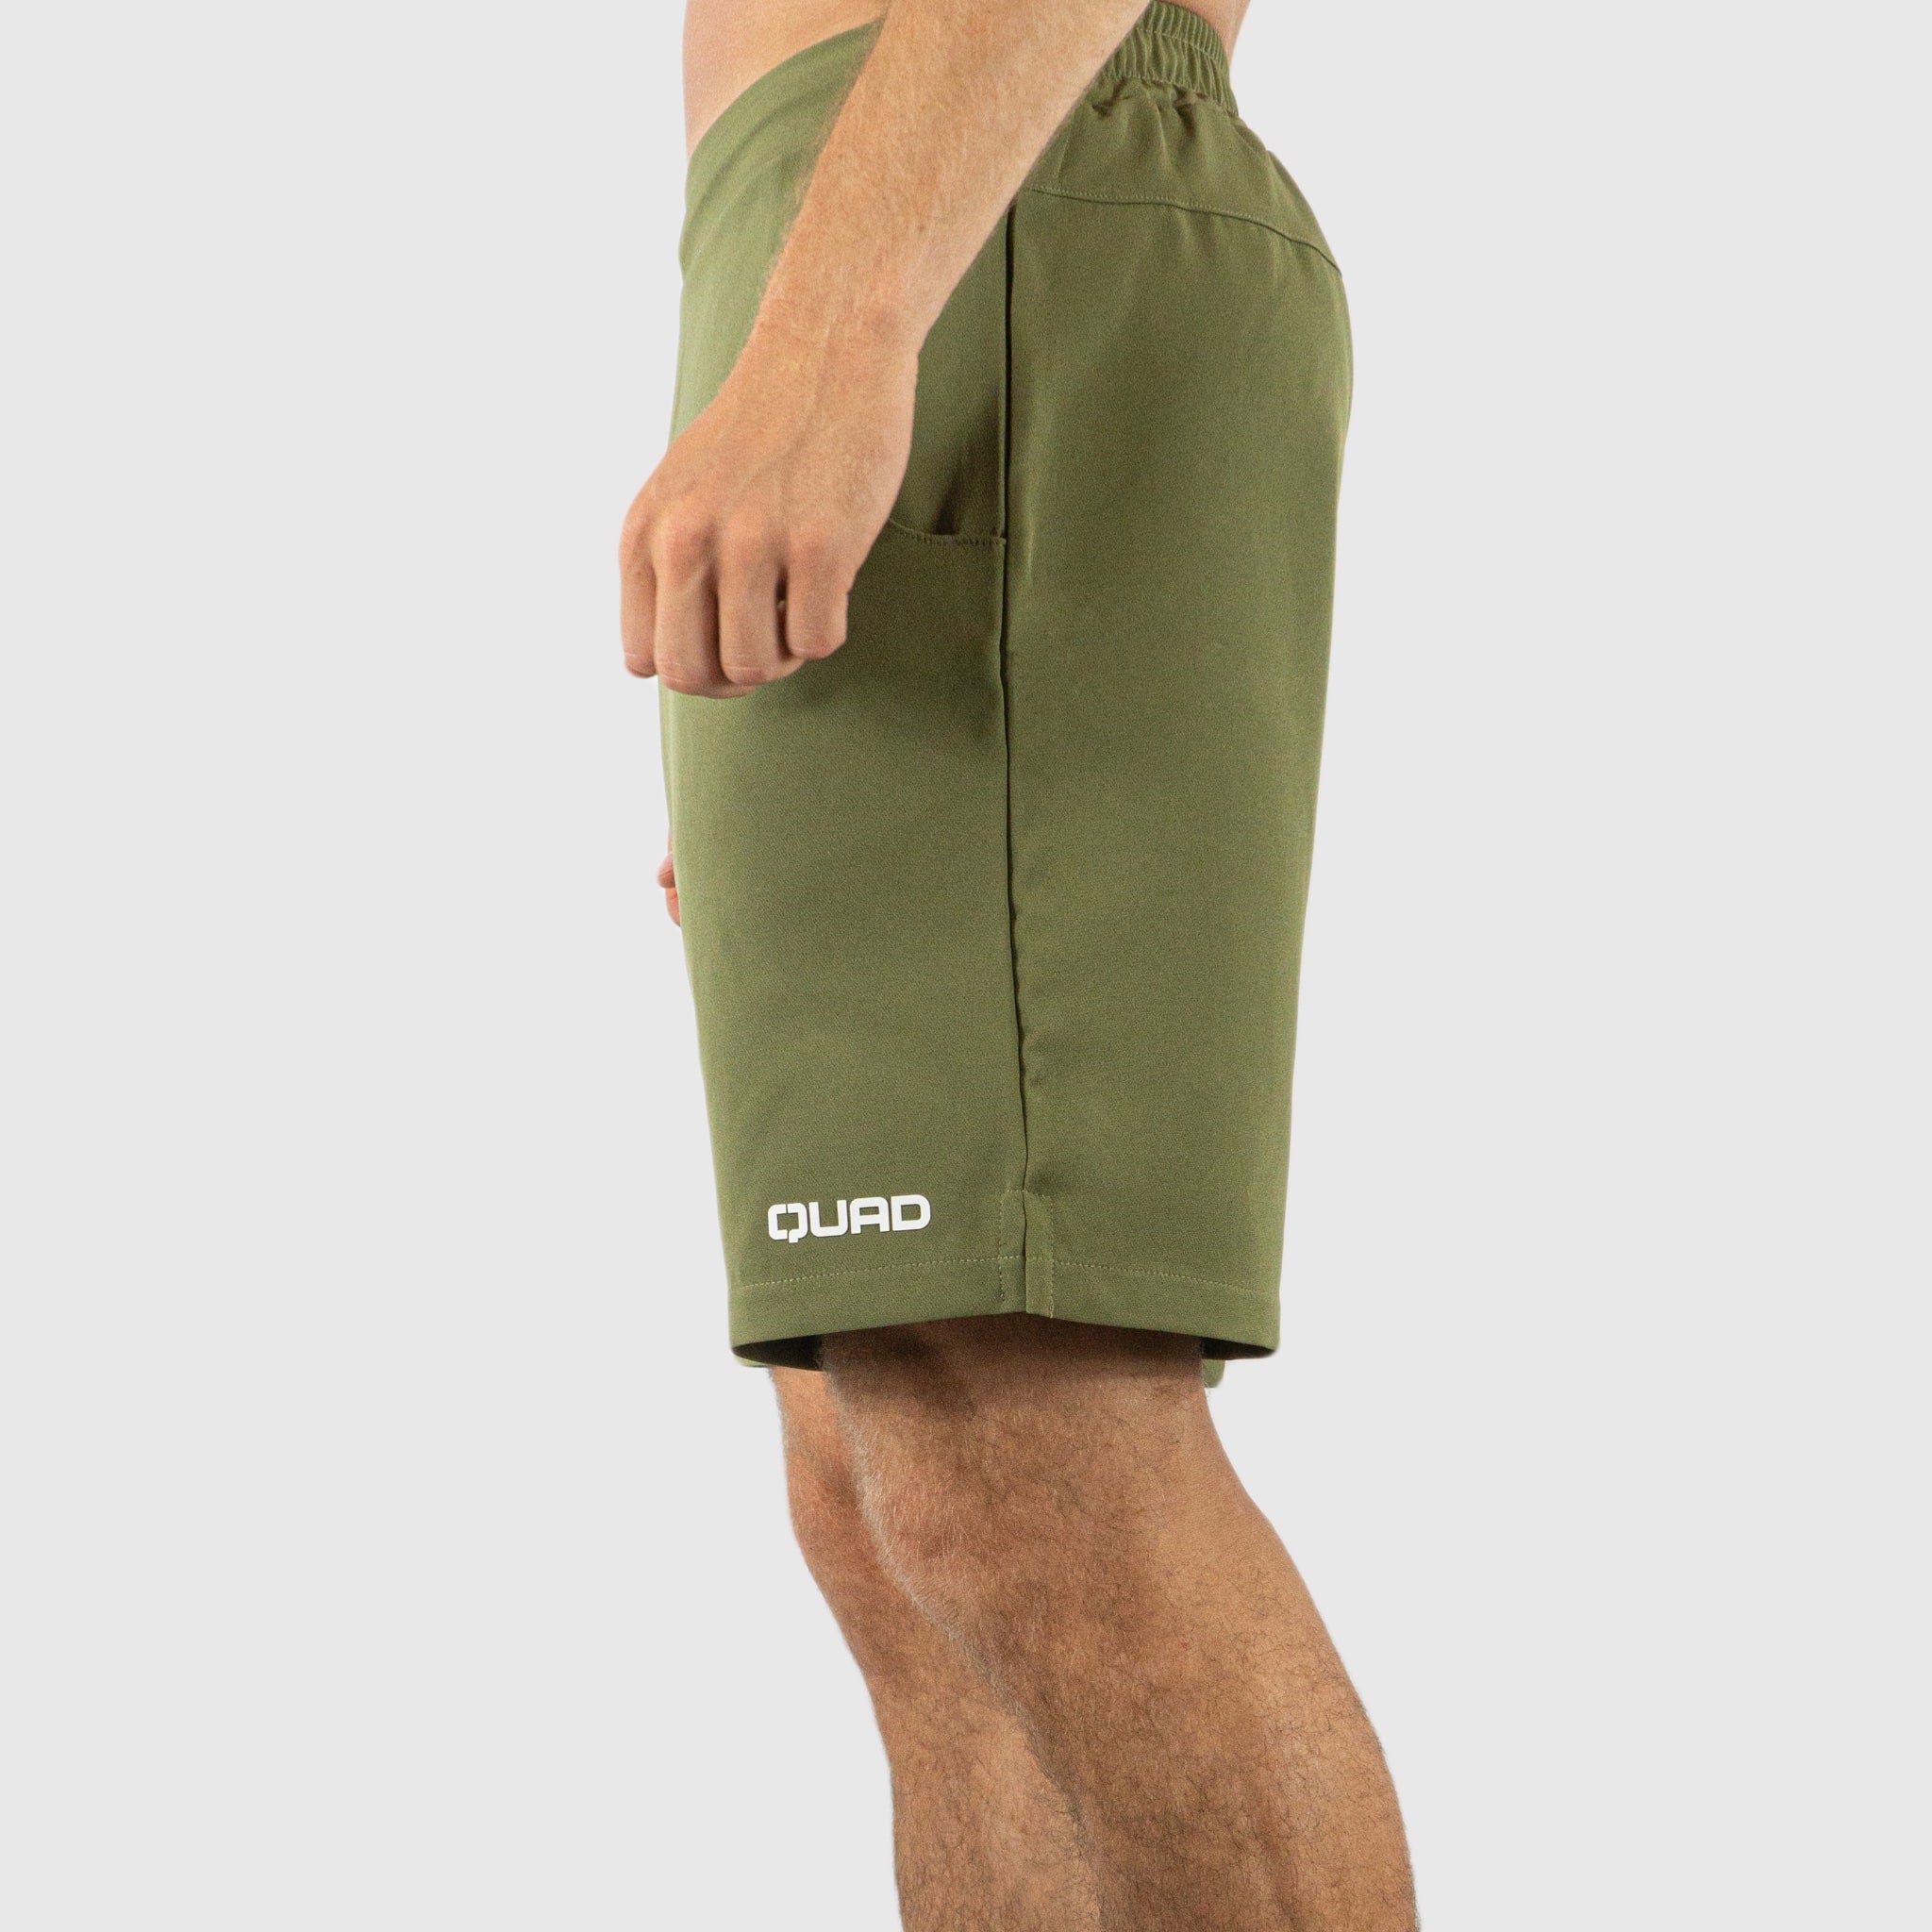 Quad Padel Shorts green left side